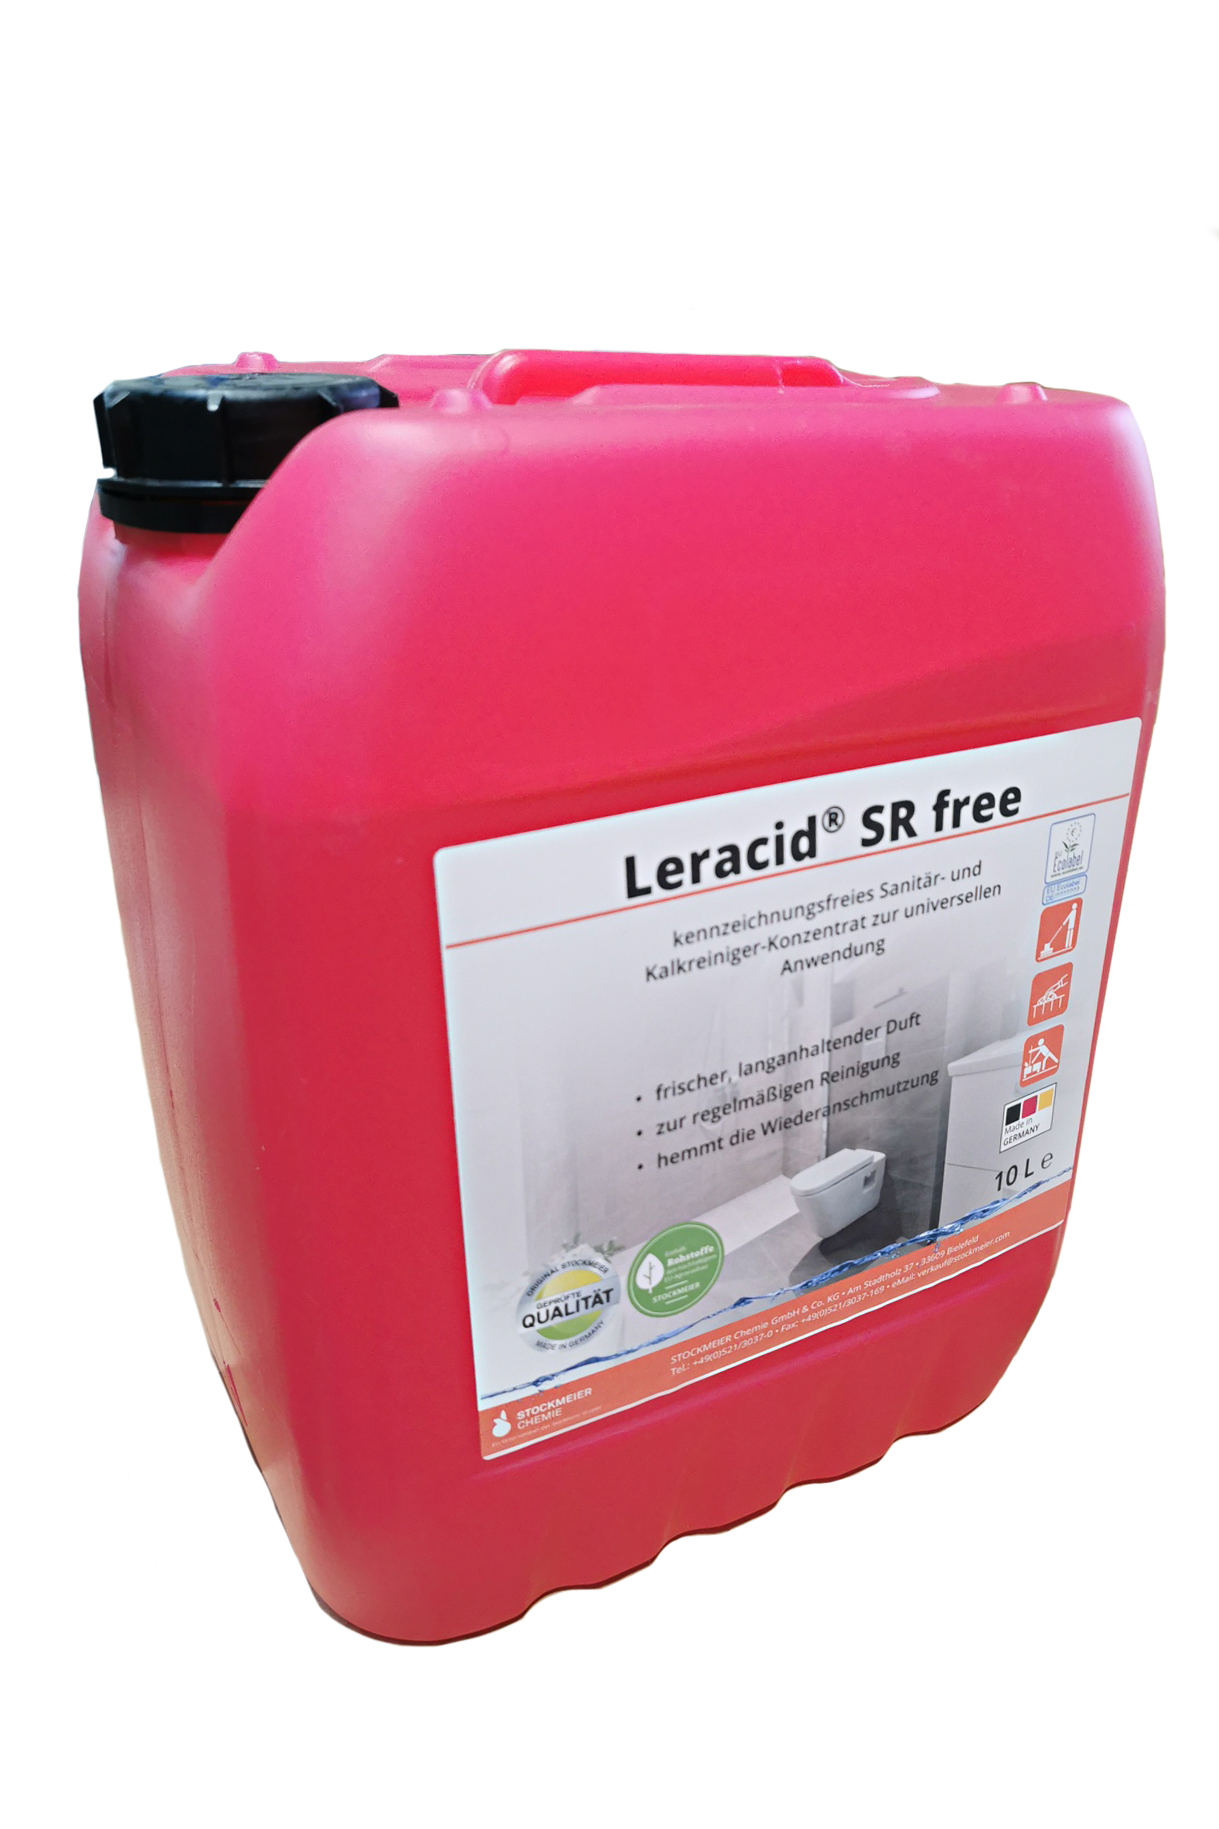 Leracid® SR free saurer Reiniger Sanitär- und Schwimmbadbereich